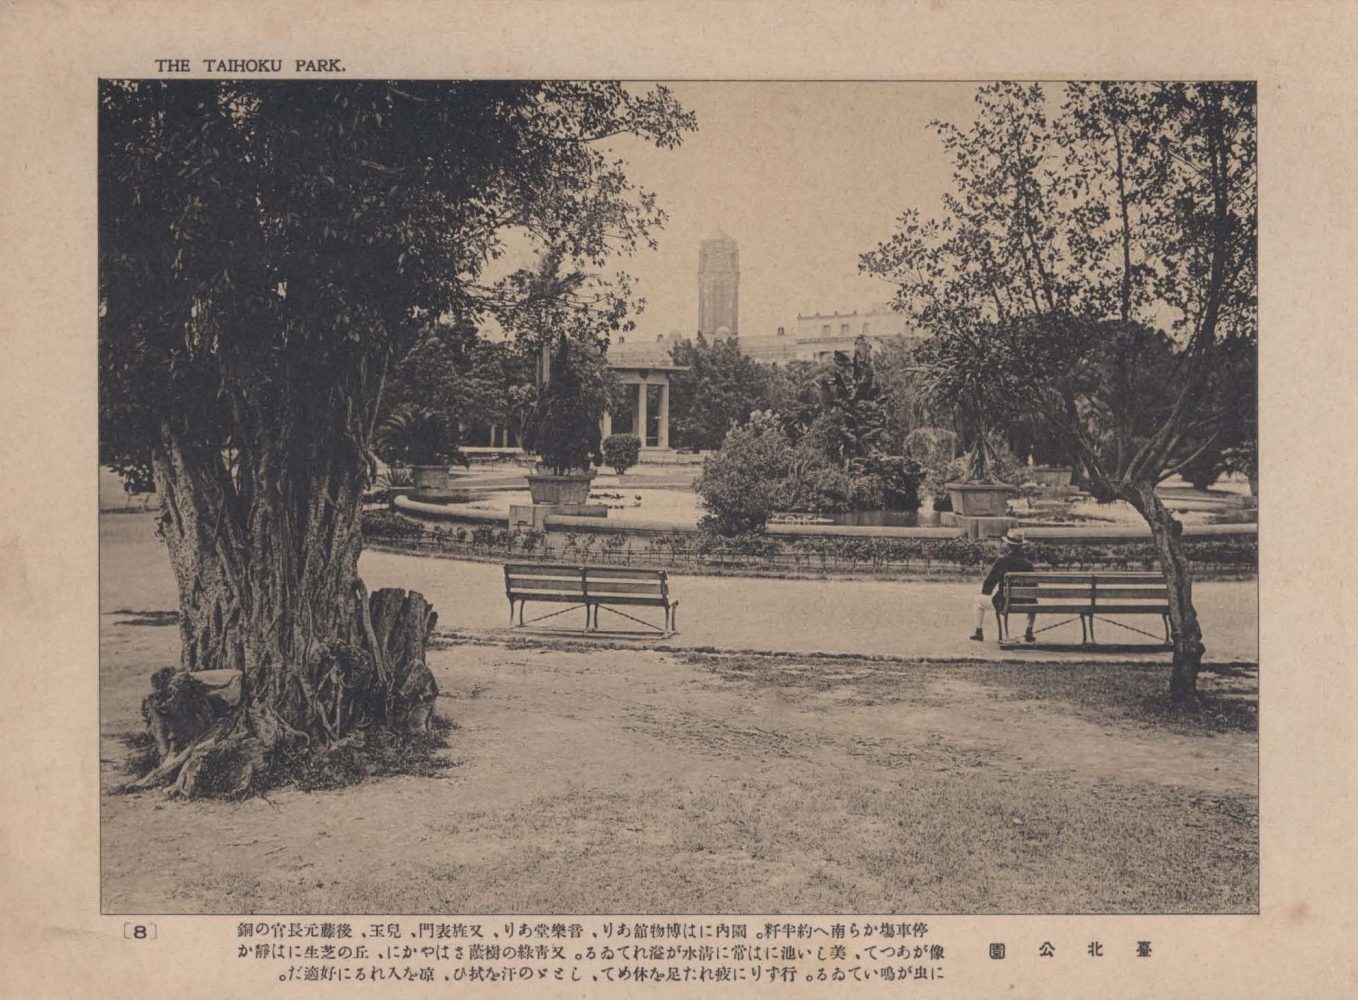 新公園（臺北公園），仿造東京日比谷公園設計的近代公園，同時保留小部份日式庭園，是臺灣所有公園當中最多西洋式設施的公園，於1908年開園